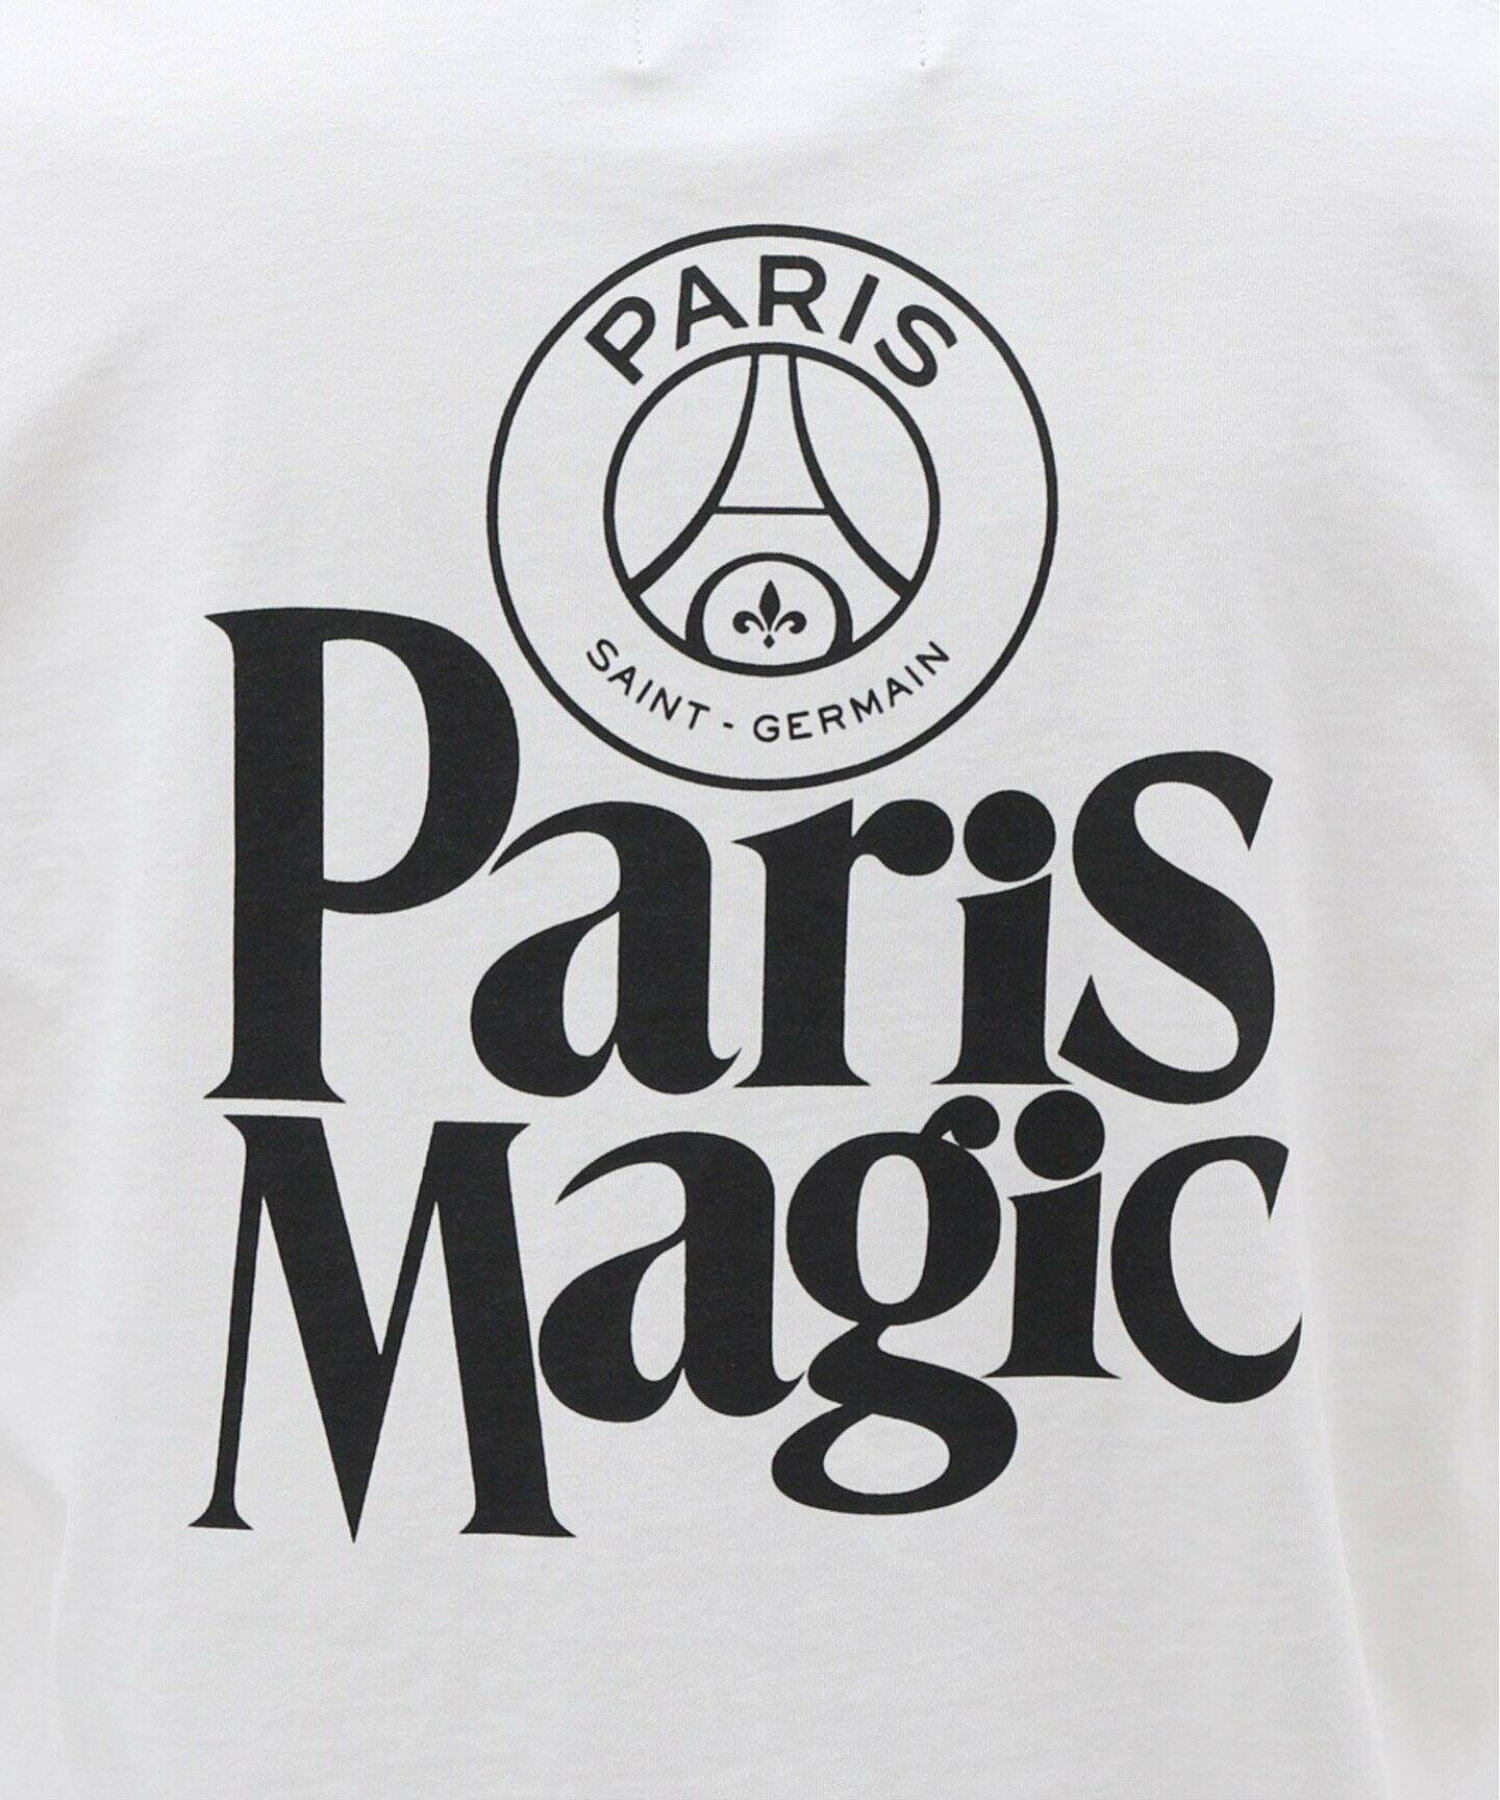 【Paris Saint-Germain】PARIS MAGIC プリント ロングスリーブTシャツ